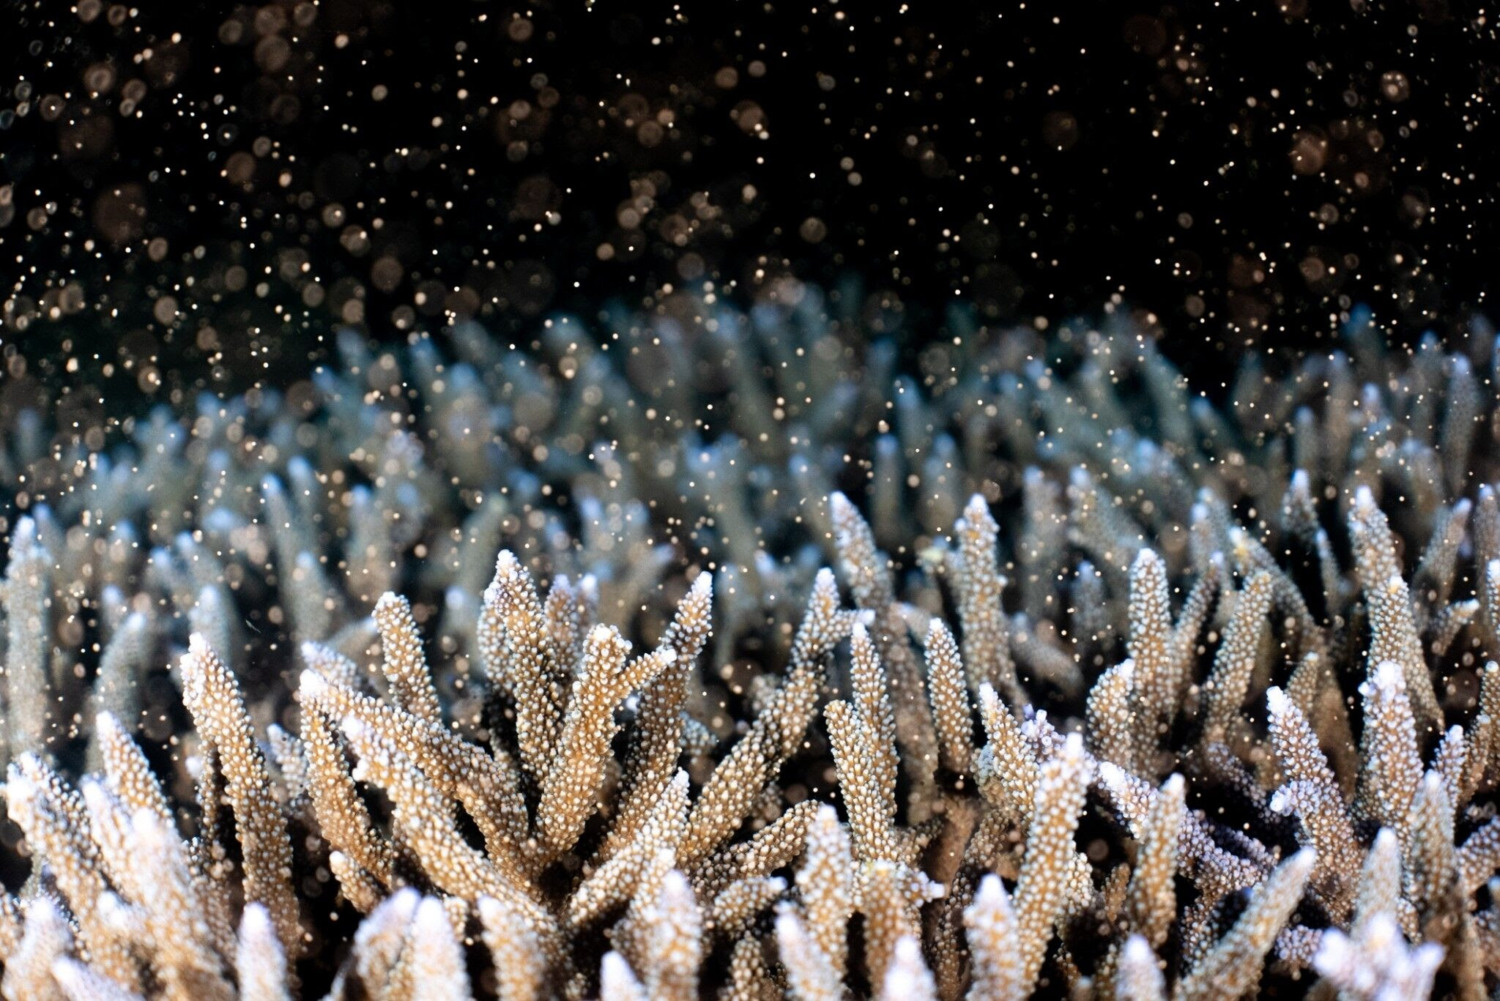 澎湖鎖港杭灣珊瑚有成  紫色軸孔珊瑚產卵現夢幻場景